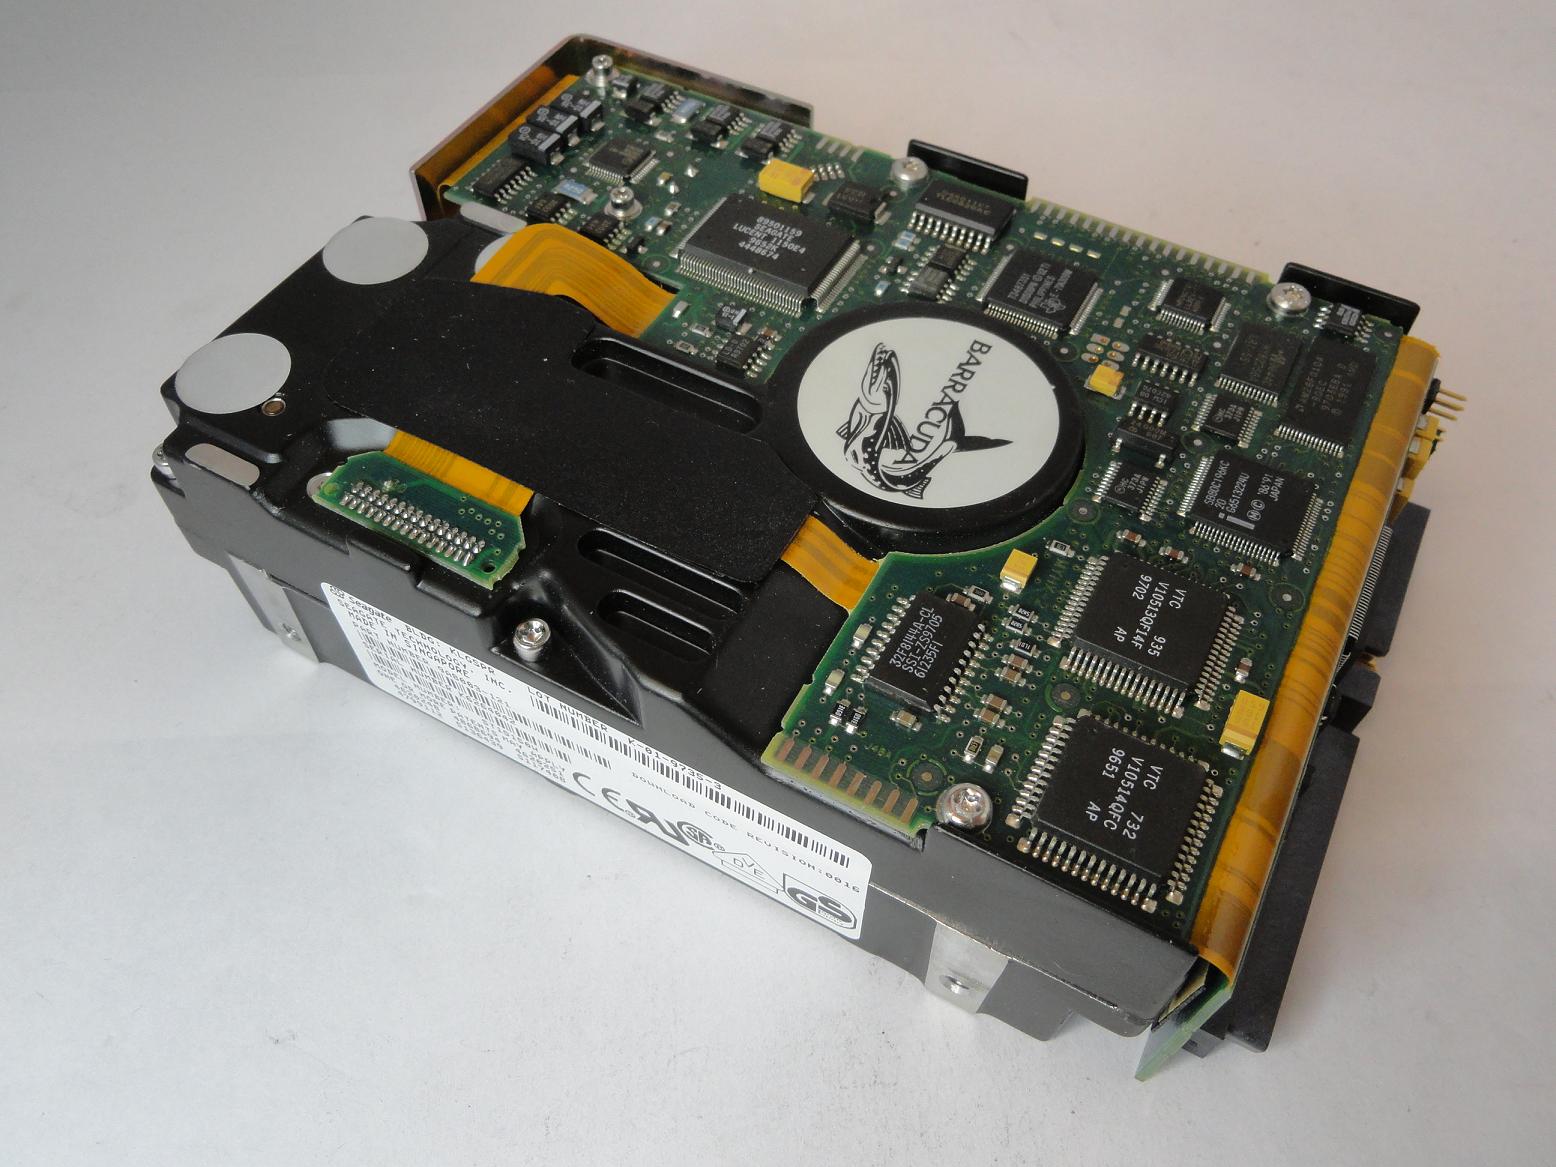 9A8003-121 - Seagate Digital 4.3GB SCSI 68 Pin 7200rpm 3.5in HDD - Refurbished